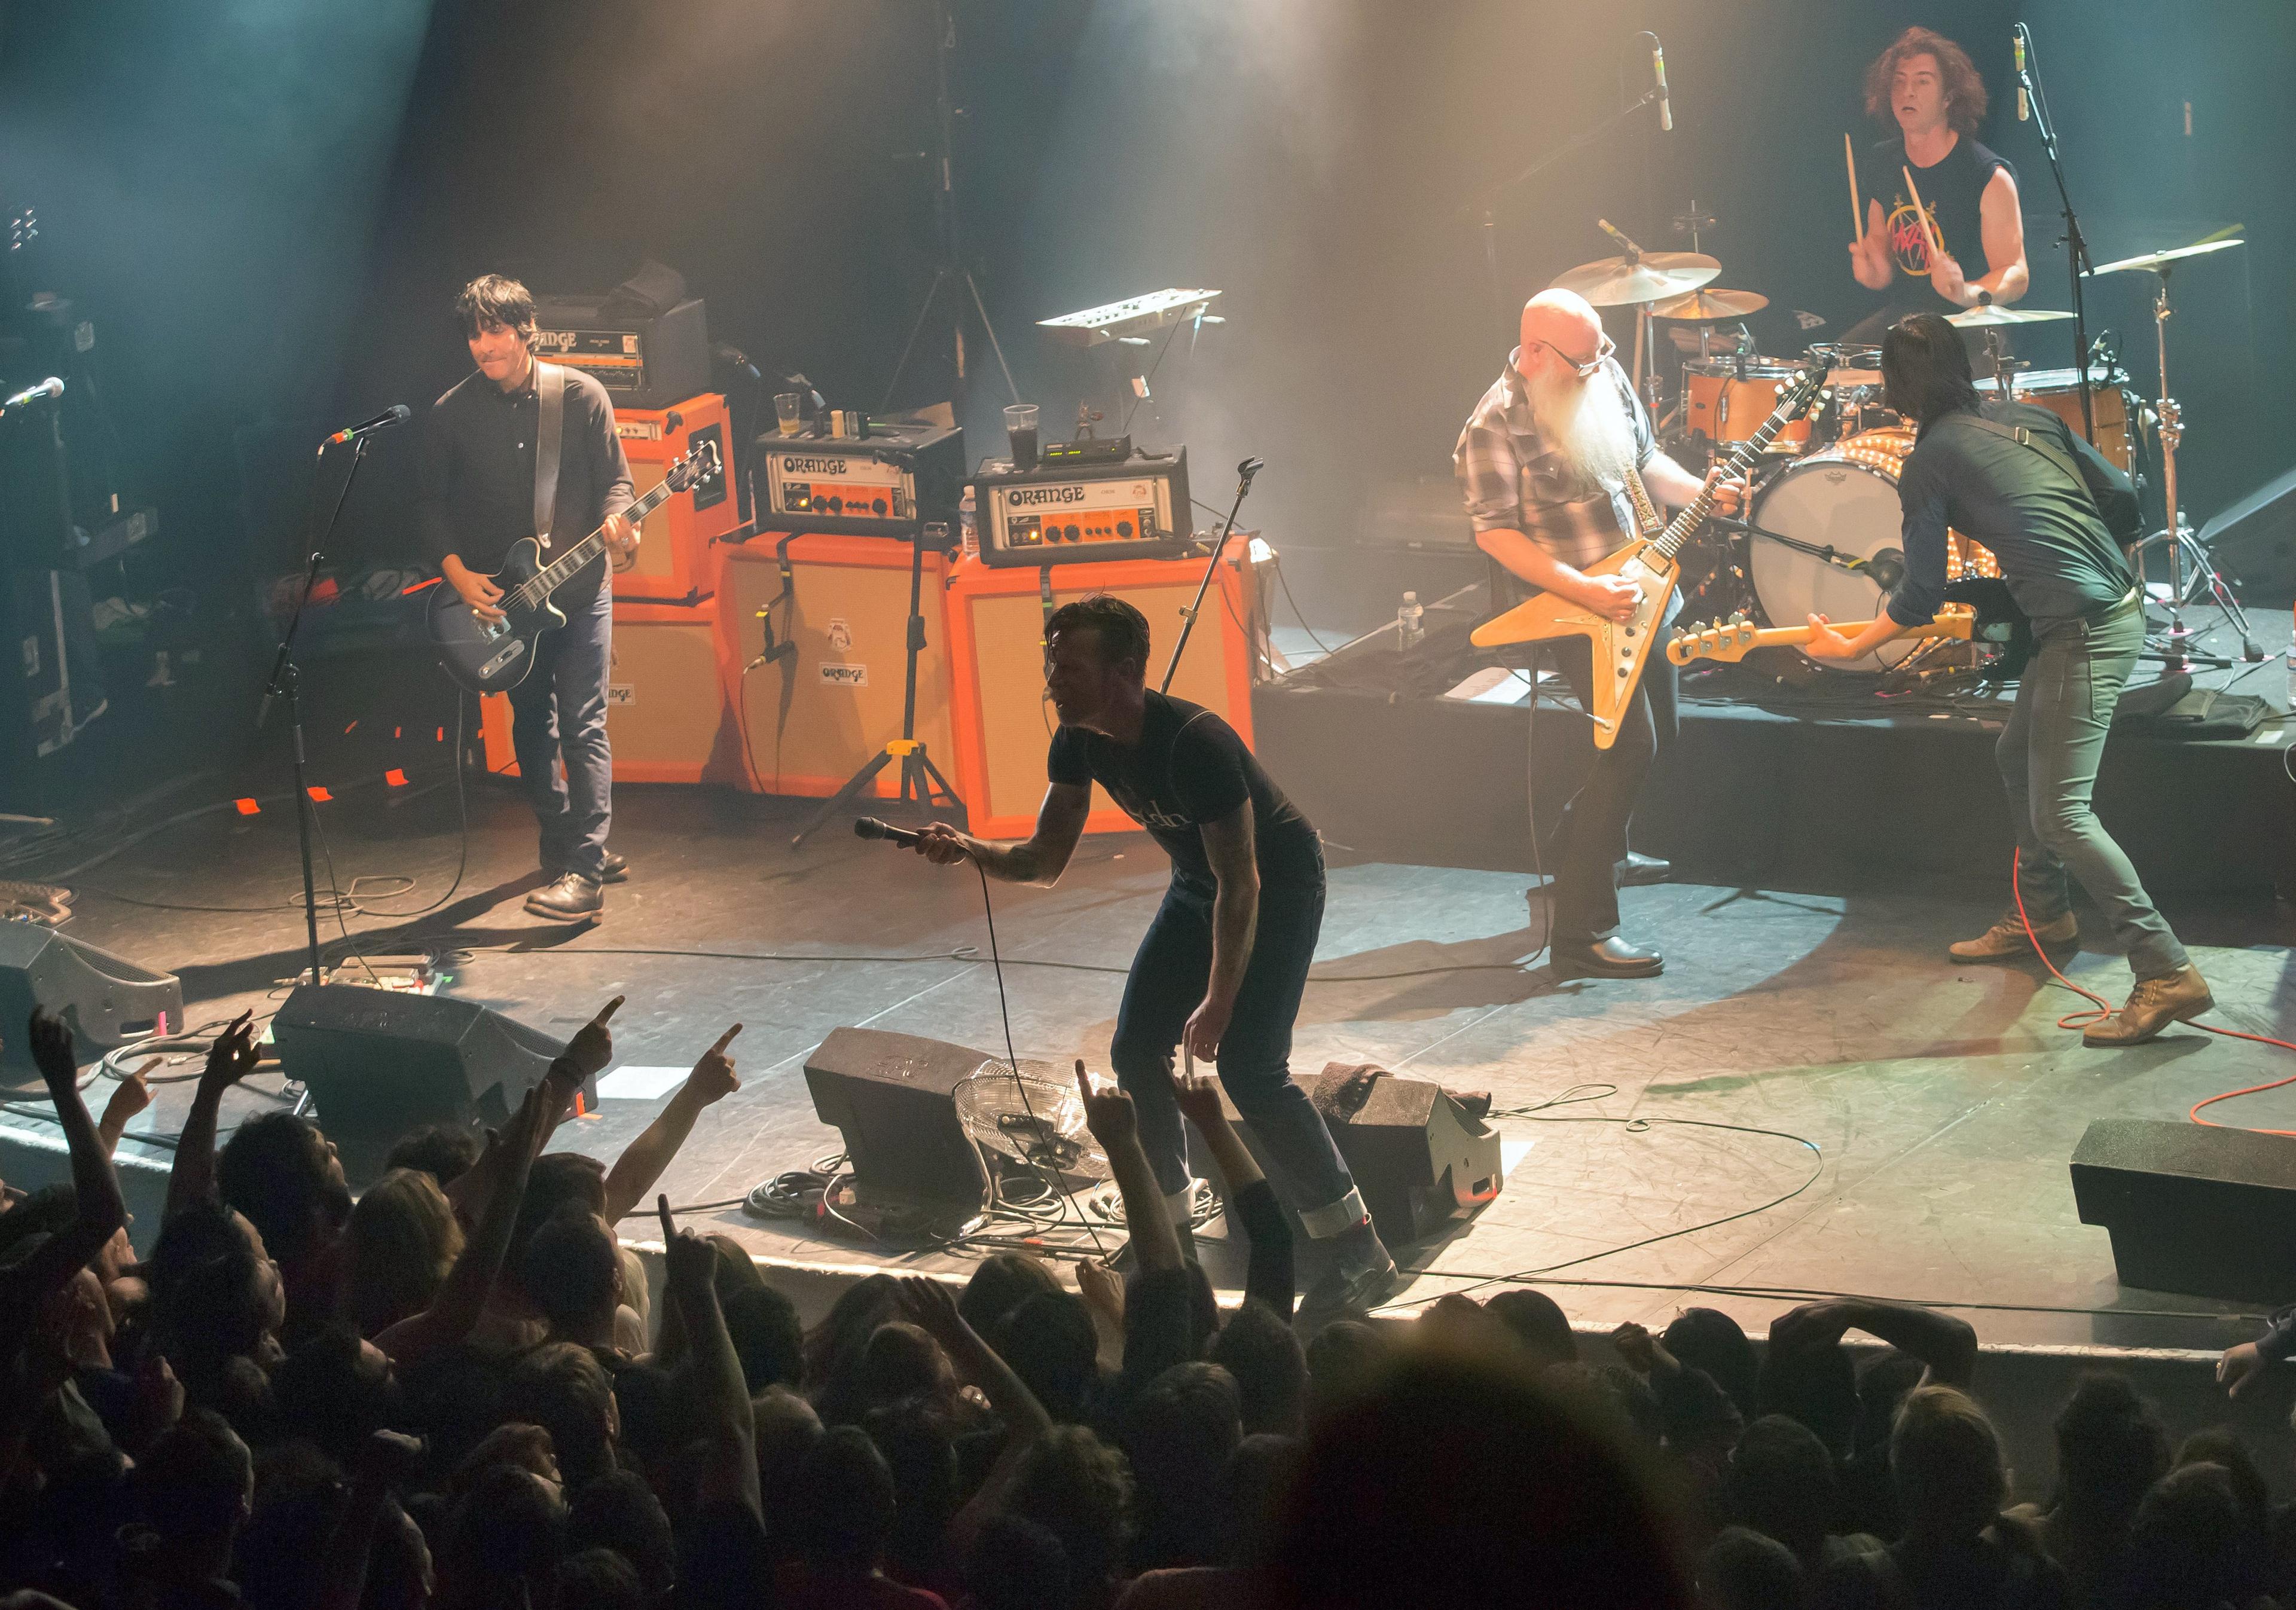 Bandet Eagles of Death Metal uppträder på konserthuset Bataclan, alldeles innan terroristerna slog till. Nu berättar bandet för första gången om tragedin. (Foto: Marion Ruszniewski /AFP/Getty Images)